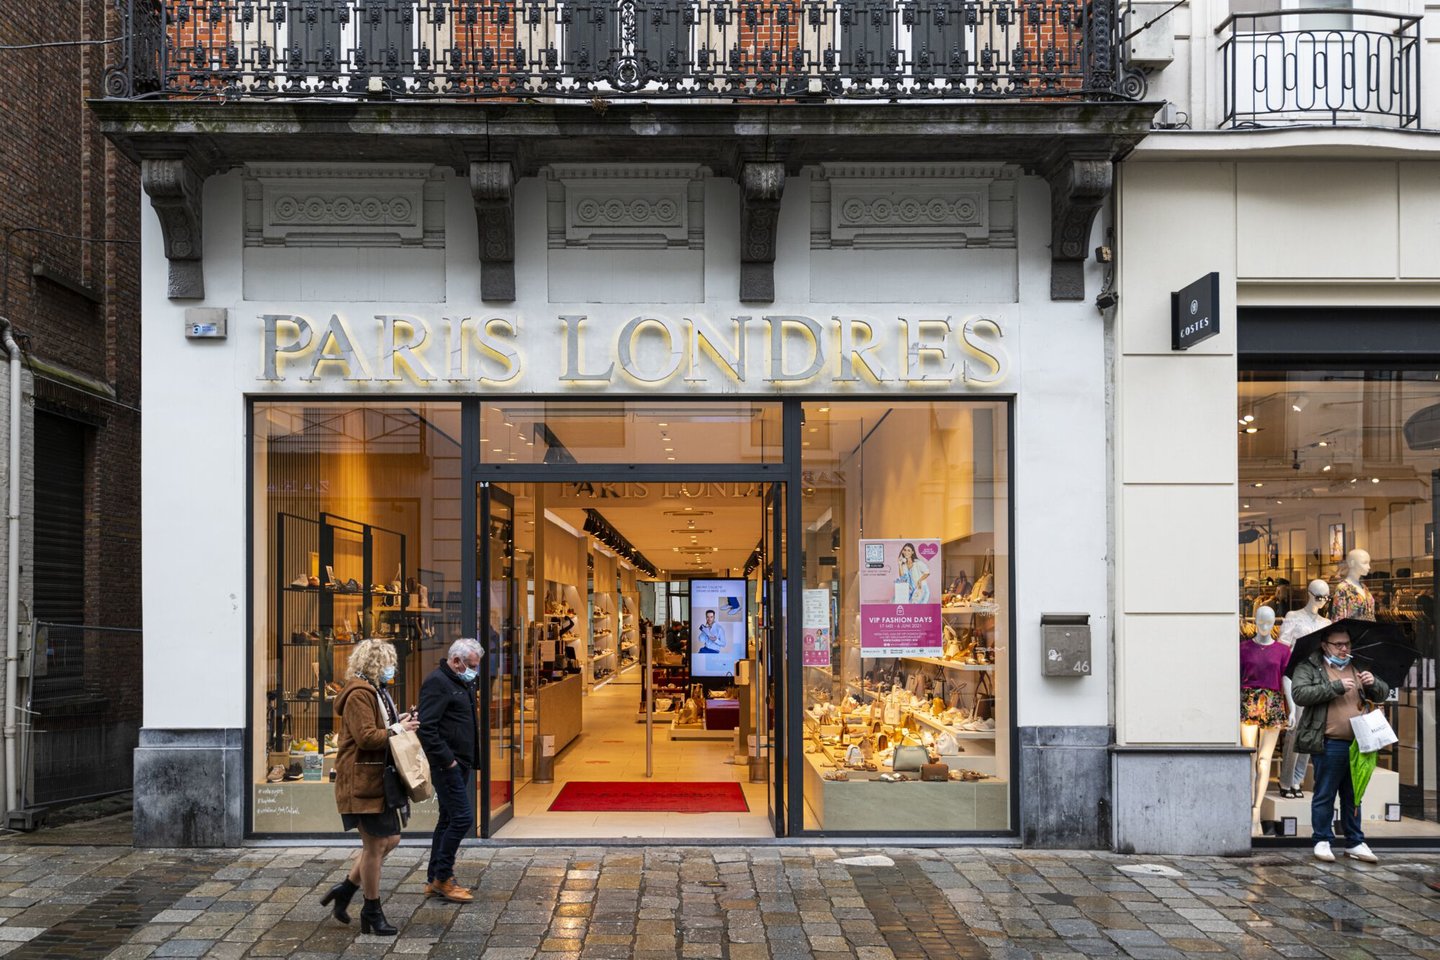 Etalage van Paris - Londres, een winkel van schoenen, tassen en accessoires